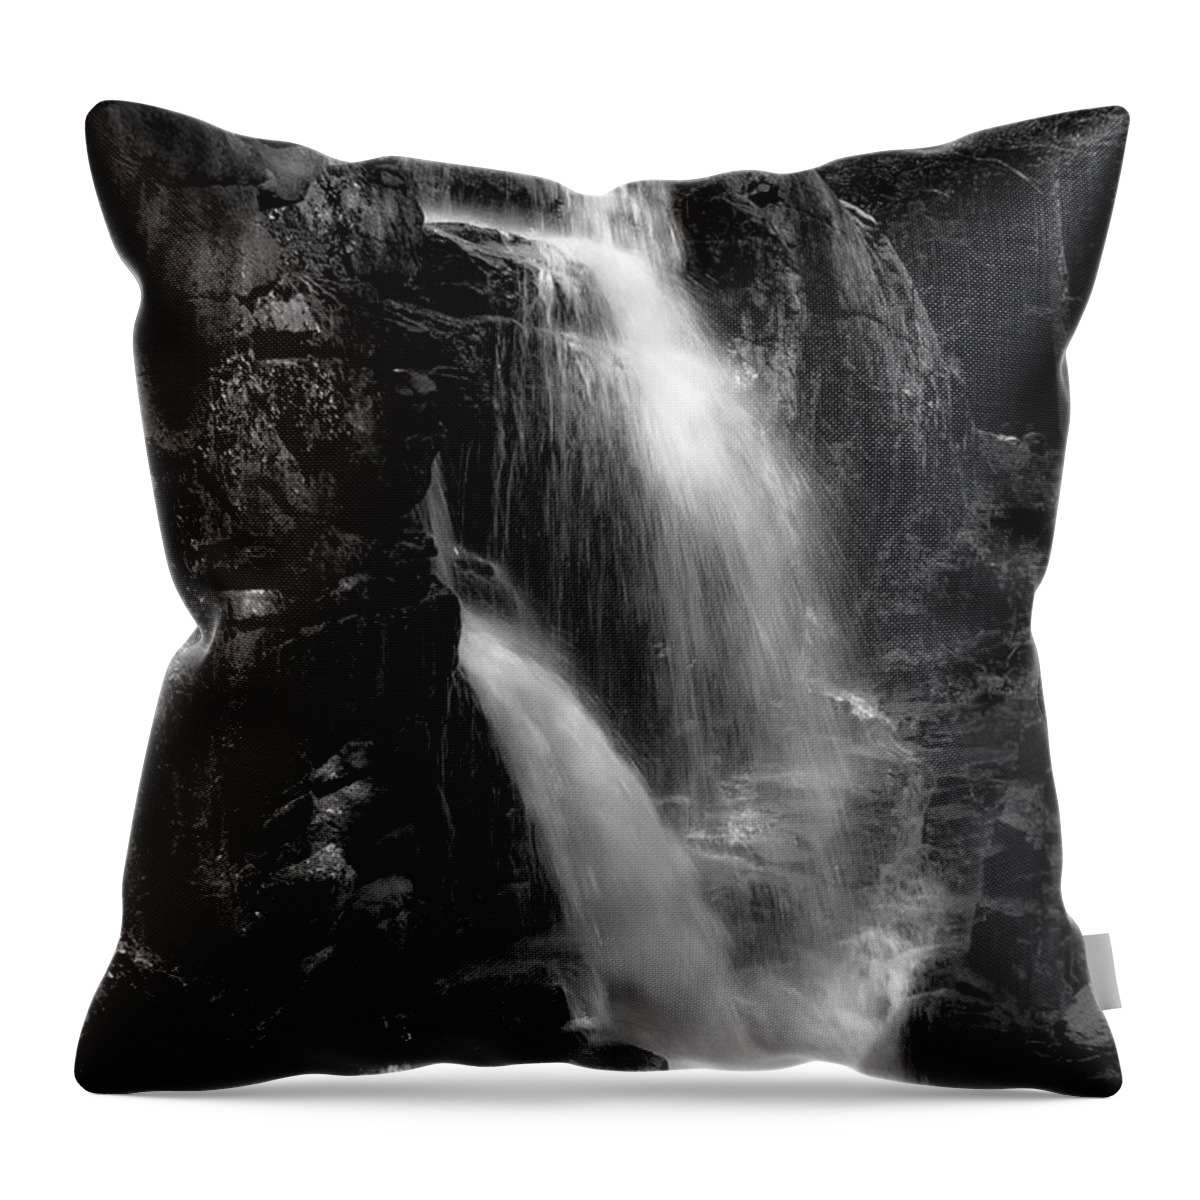 Franconia Notch Waterfall Throw Pillow featuring the photograph Franconia Notch Waterfall by Jason Moynihan